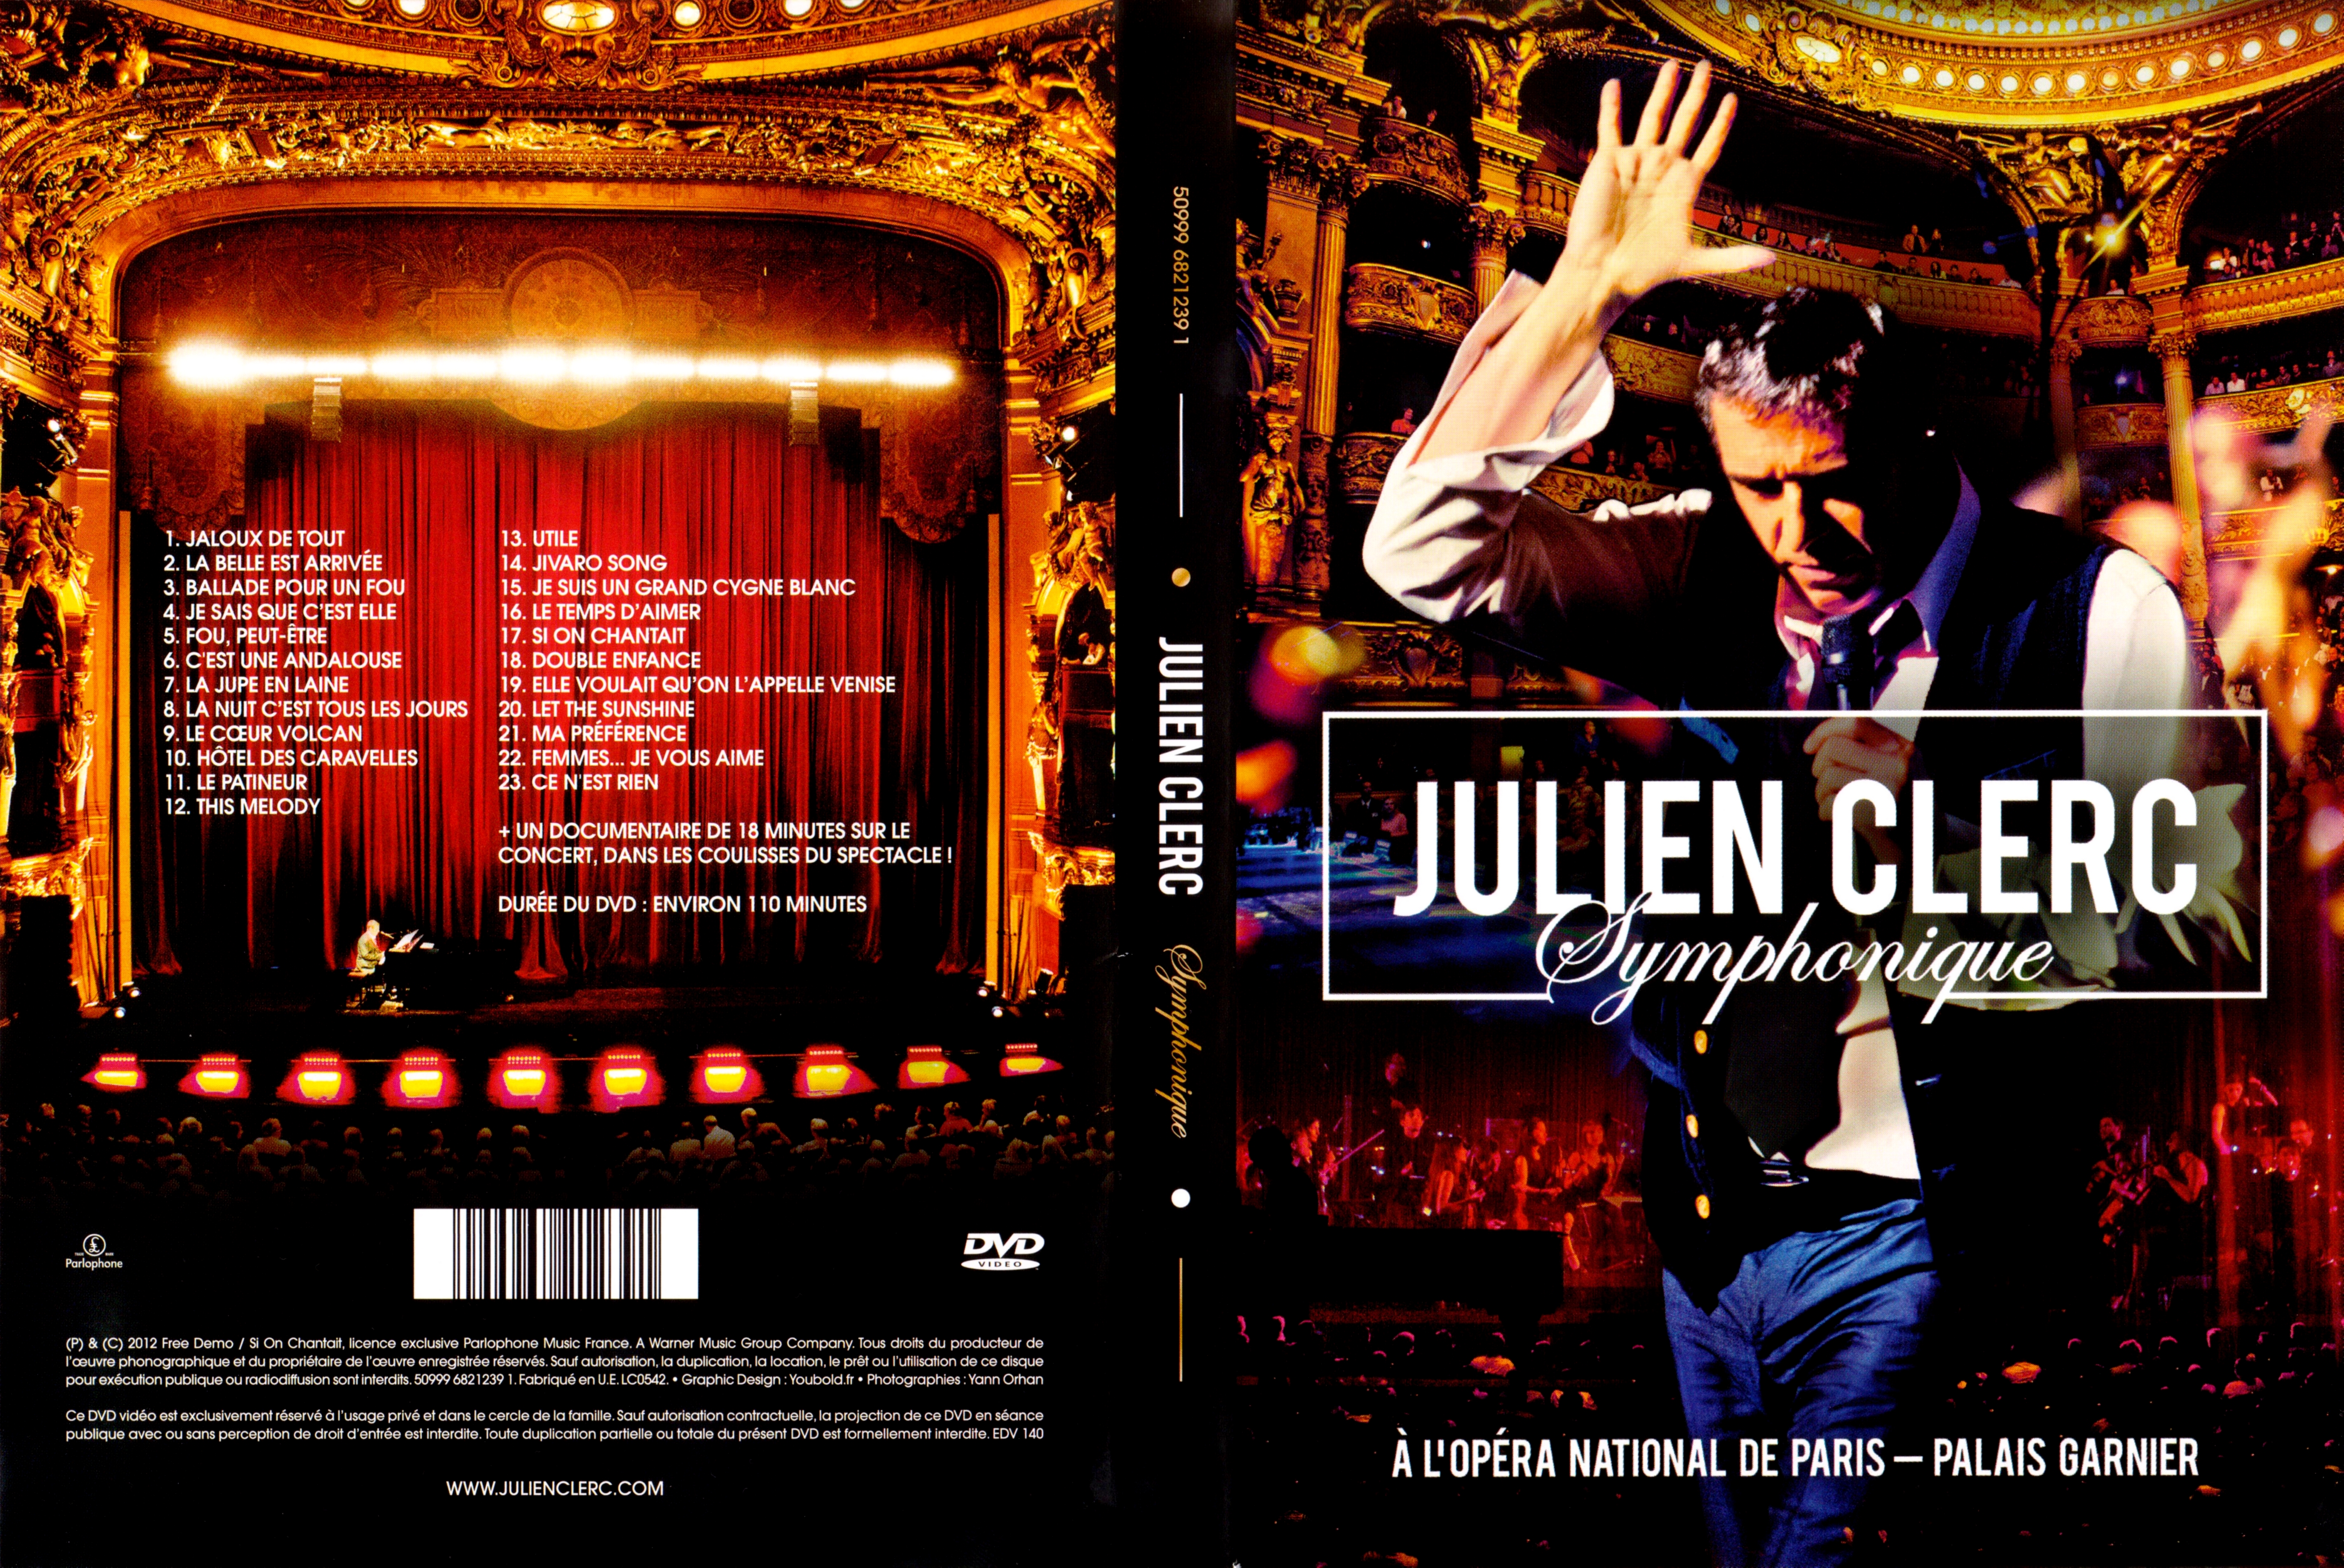 Jaquette DVD Julien Clerc Symphonique